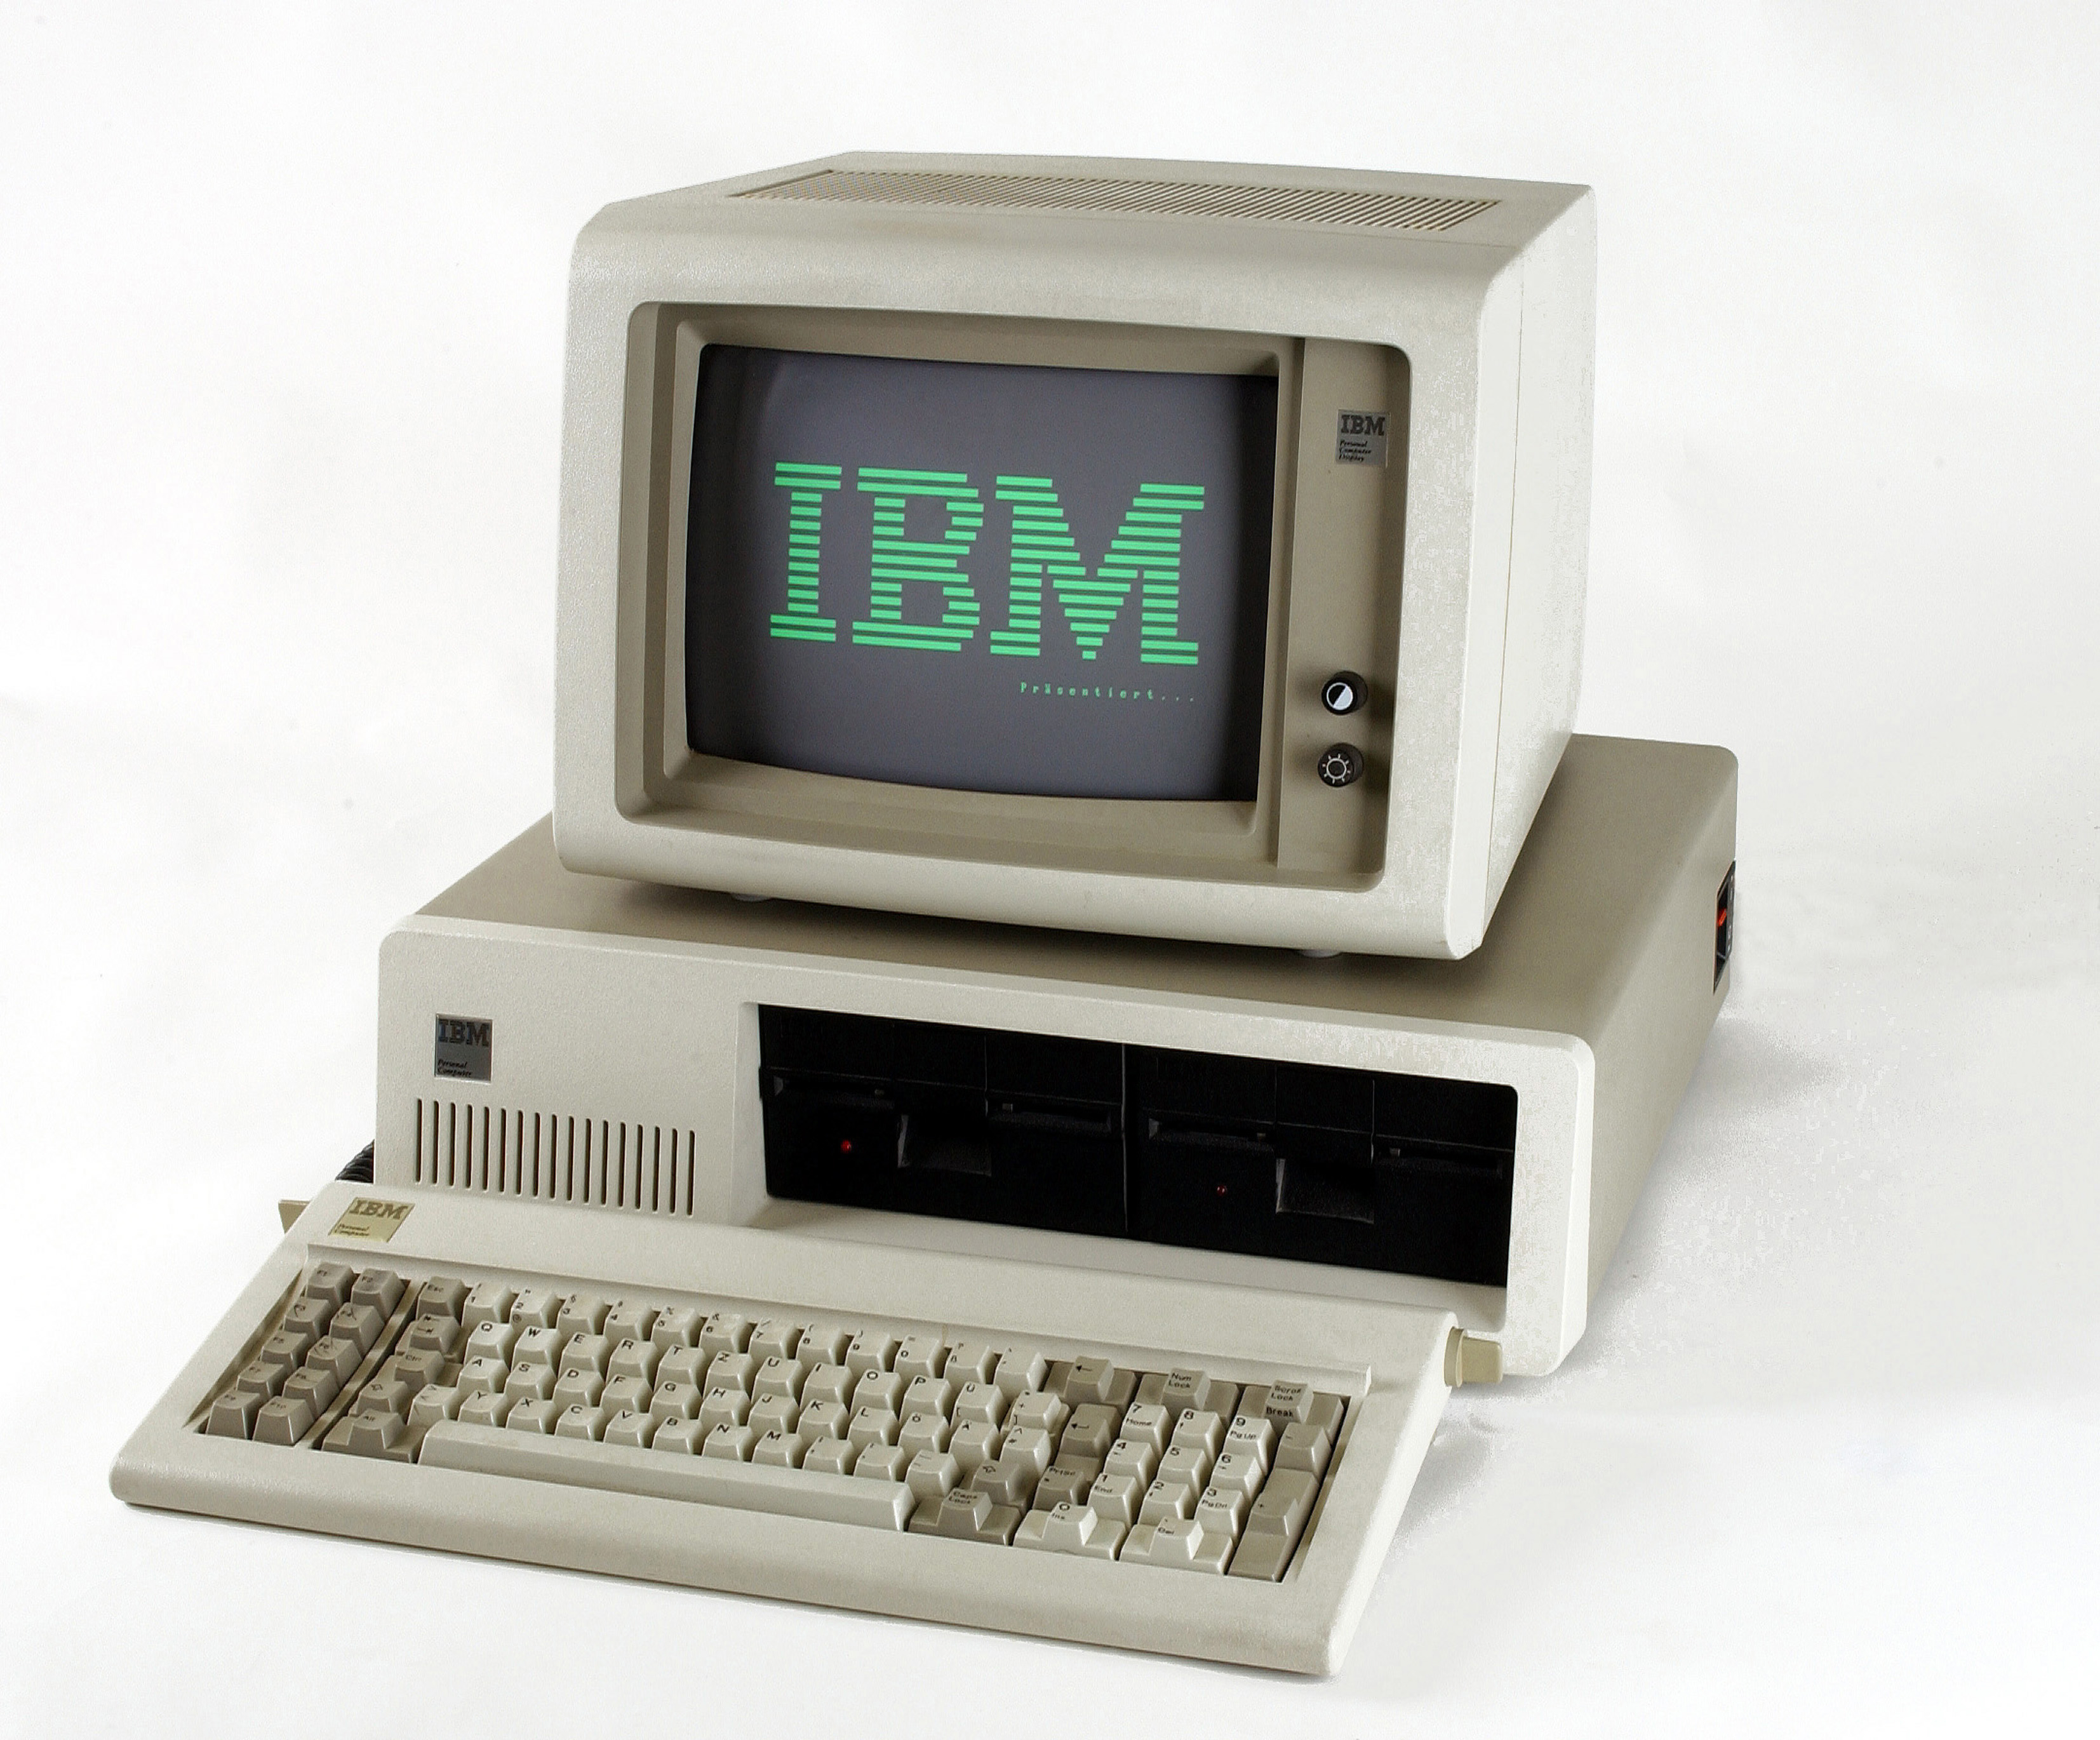 First personal. IBM PC или IBM 5150. IBM компьютер 1981. Микрокомпьютер IBM PC 1981. Первый персональный IBM PC (модель IBM 5150).